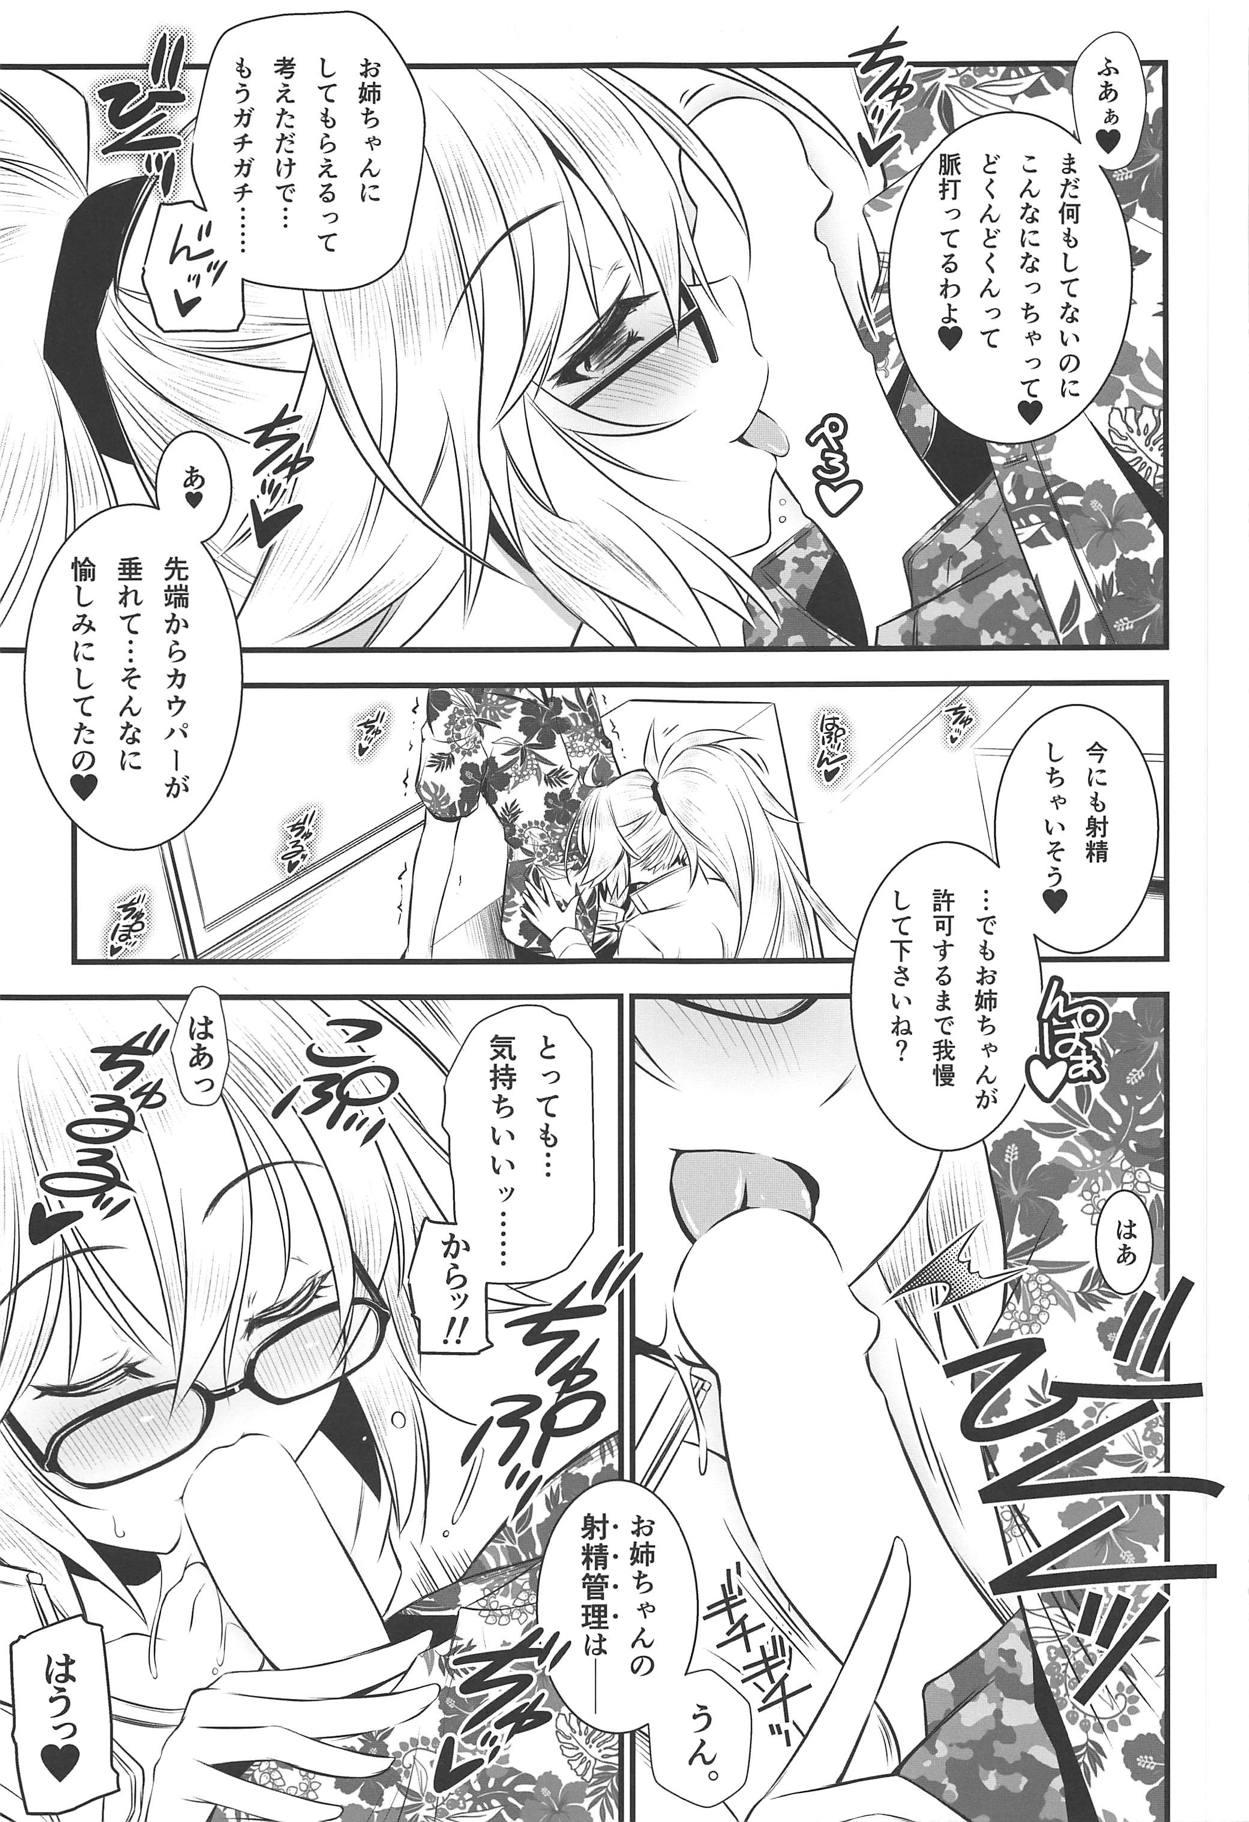 Assfucking Onee-chan wa Zettai nan desu - Fate grand order Ebony - Page 4